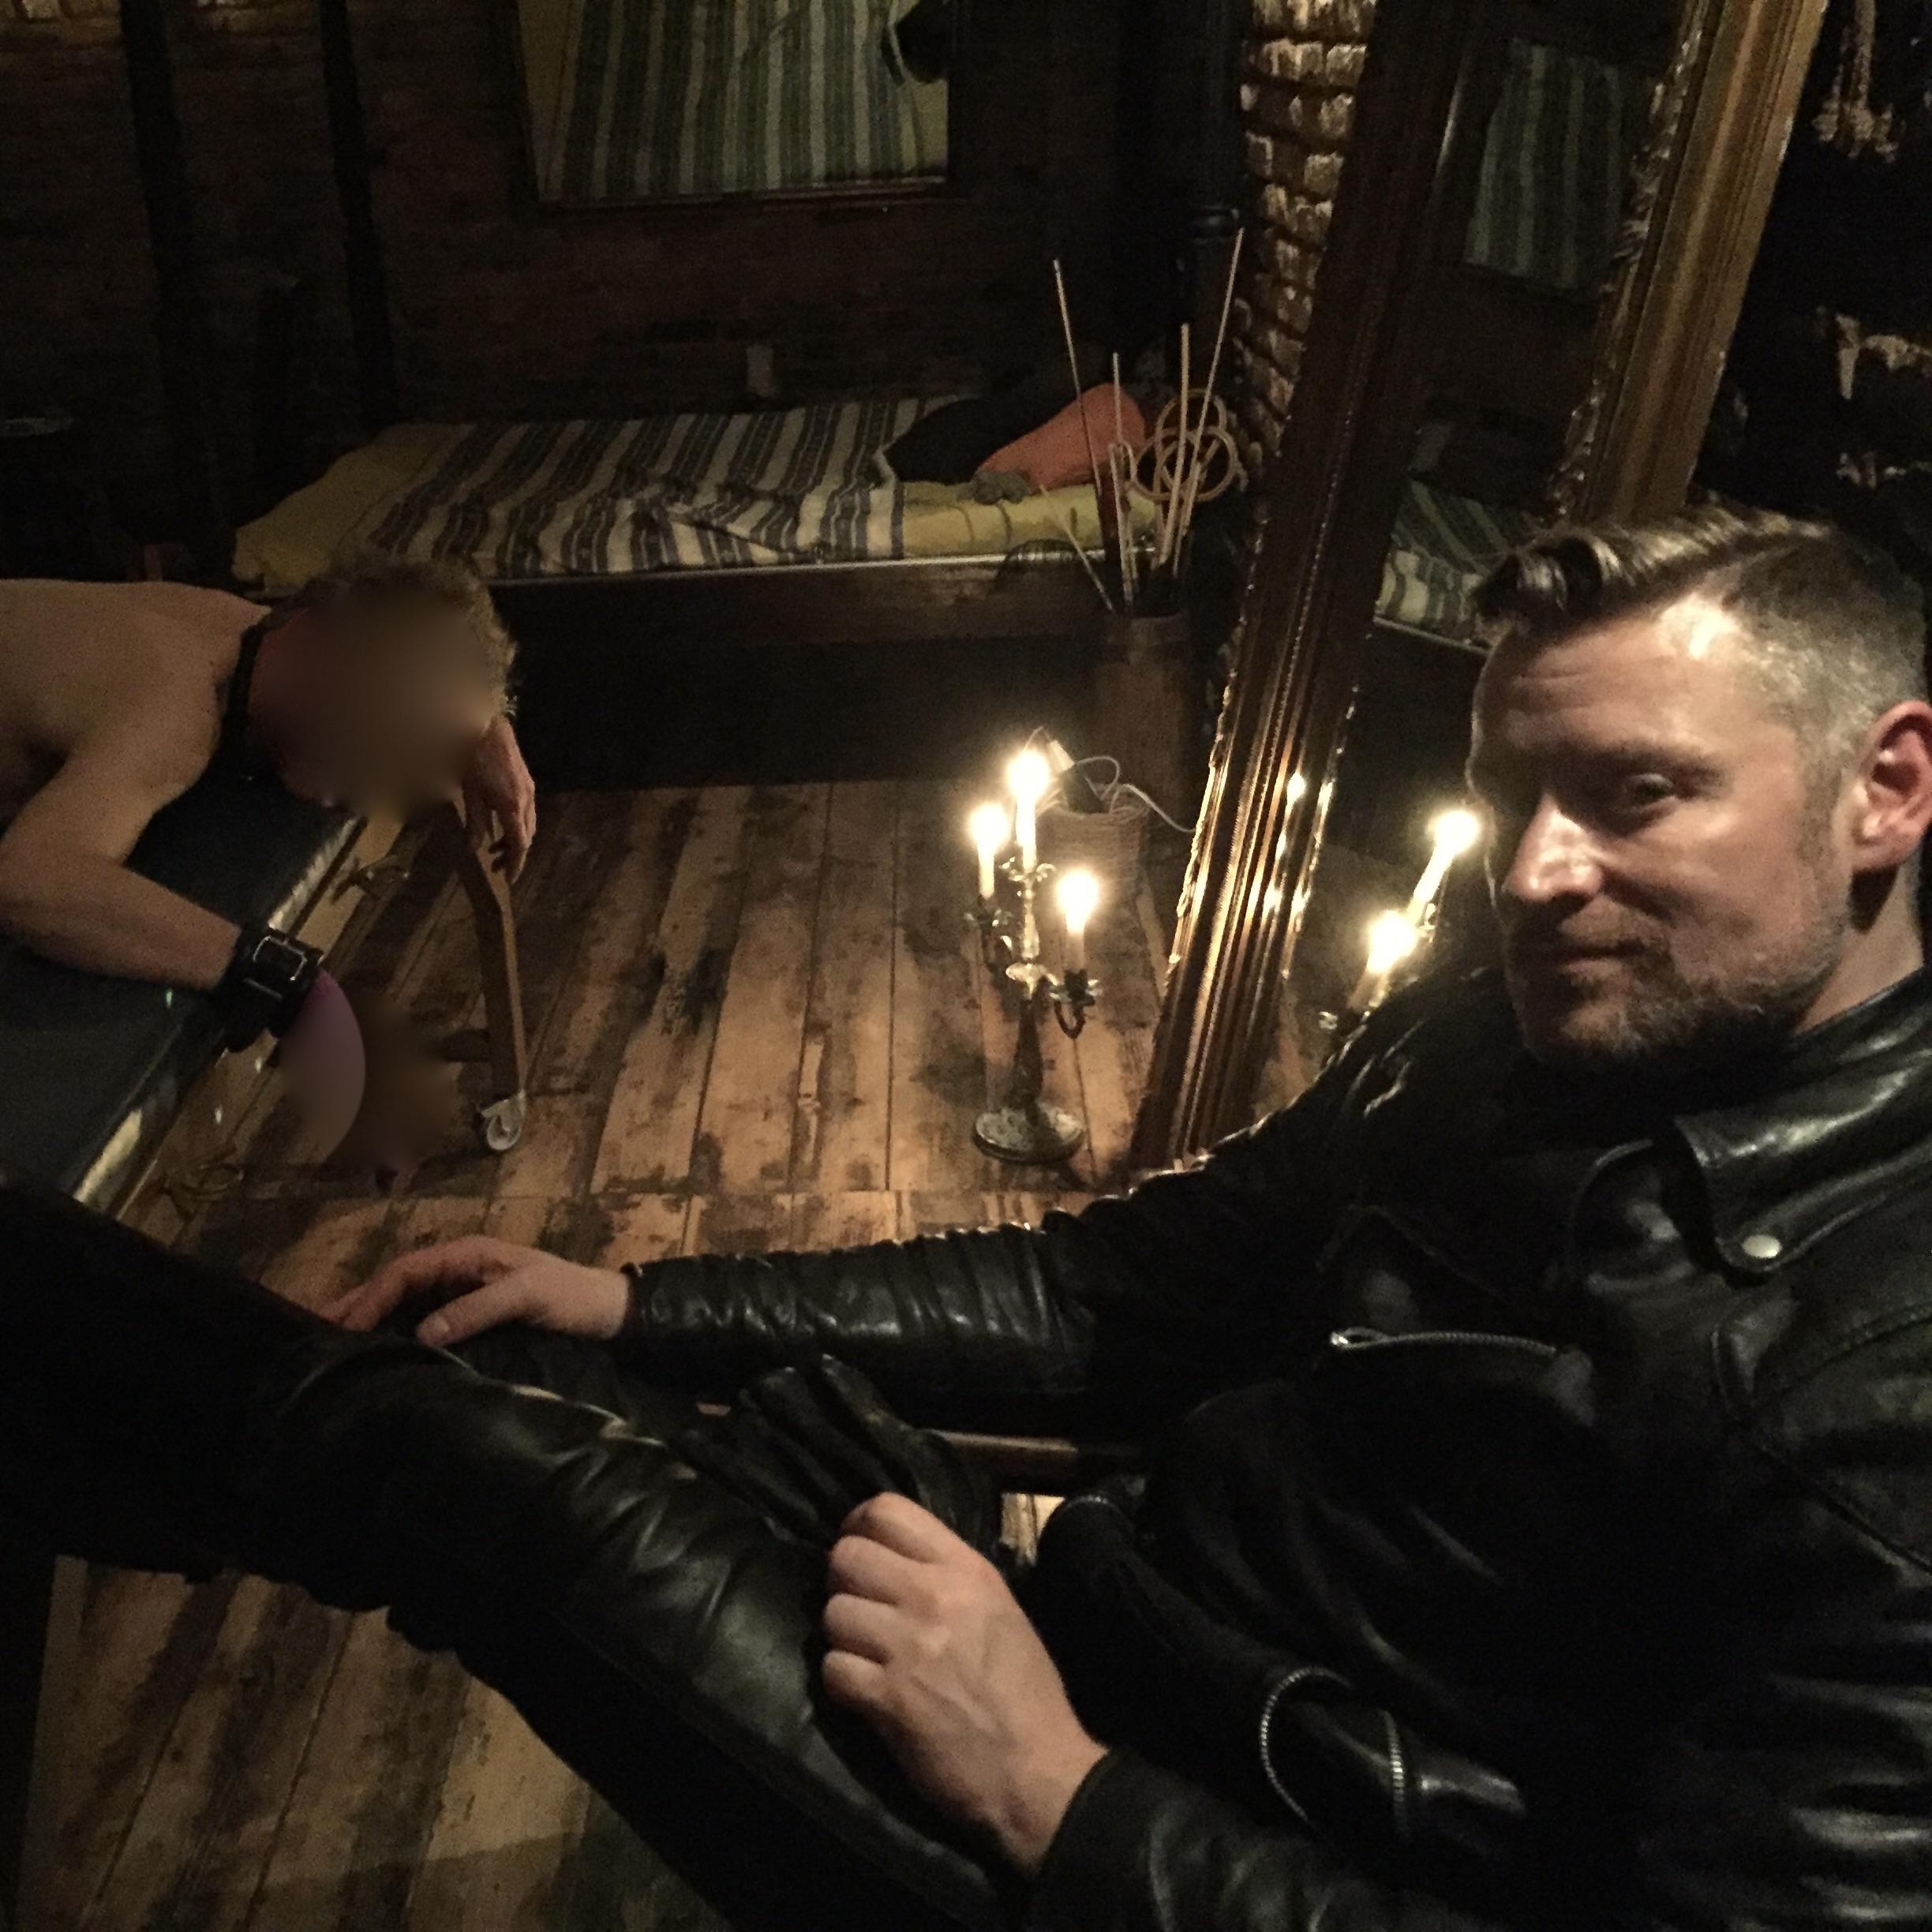 SM Master Dominus Andre sitzt in Leder auf seinem Stuhl und sieht den gefesselten nackten Sklaven an